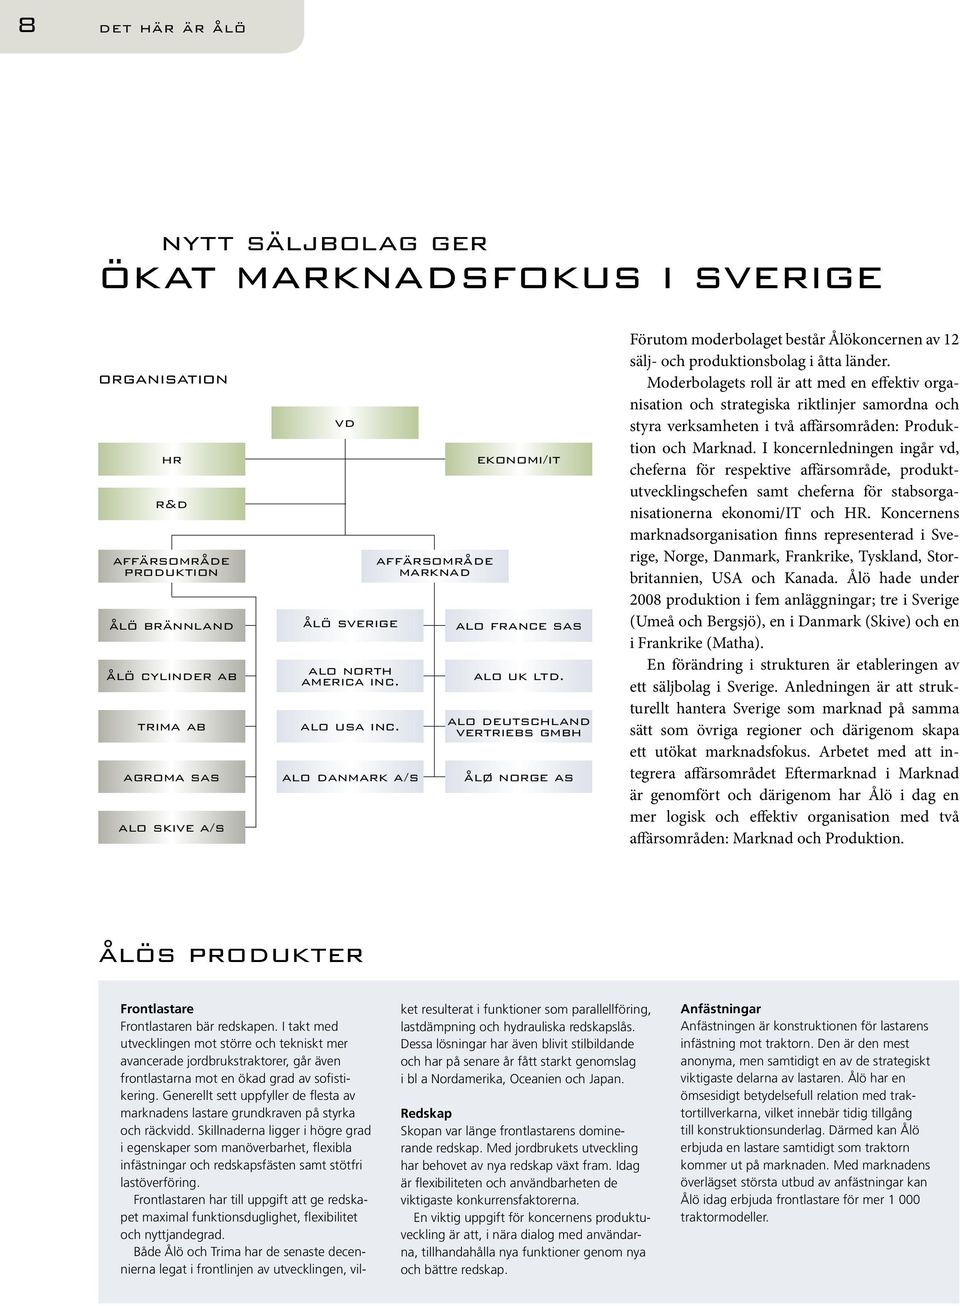 alo deutschland vertriebs gmbh ålø norge as Förutom moderbolaget består Ålökoncernen av 12 sälj- och produktionsbolag i åtta länder.